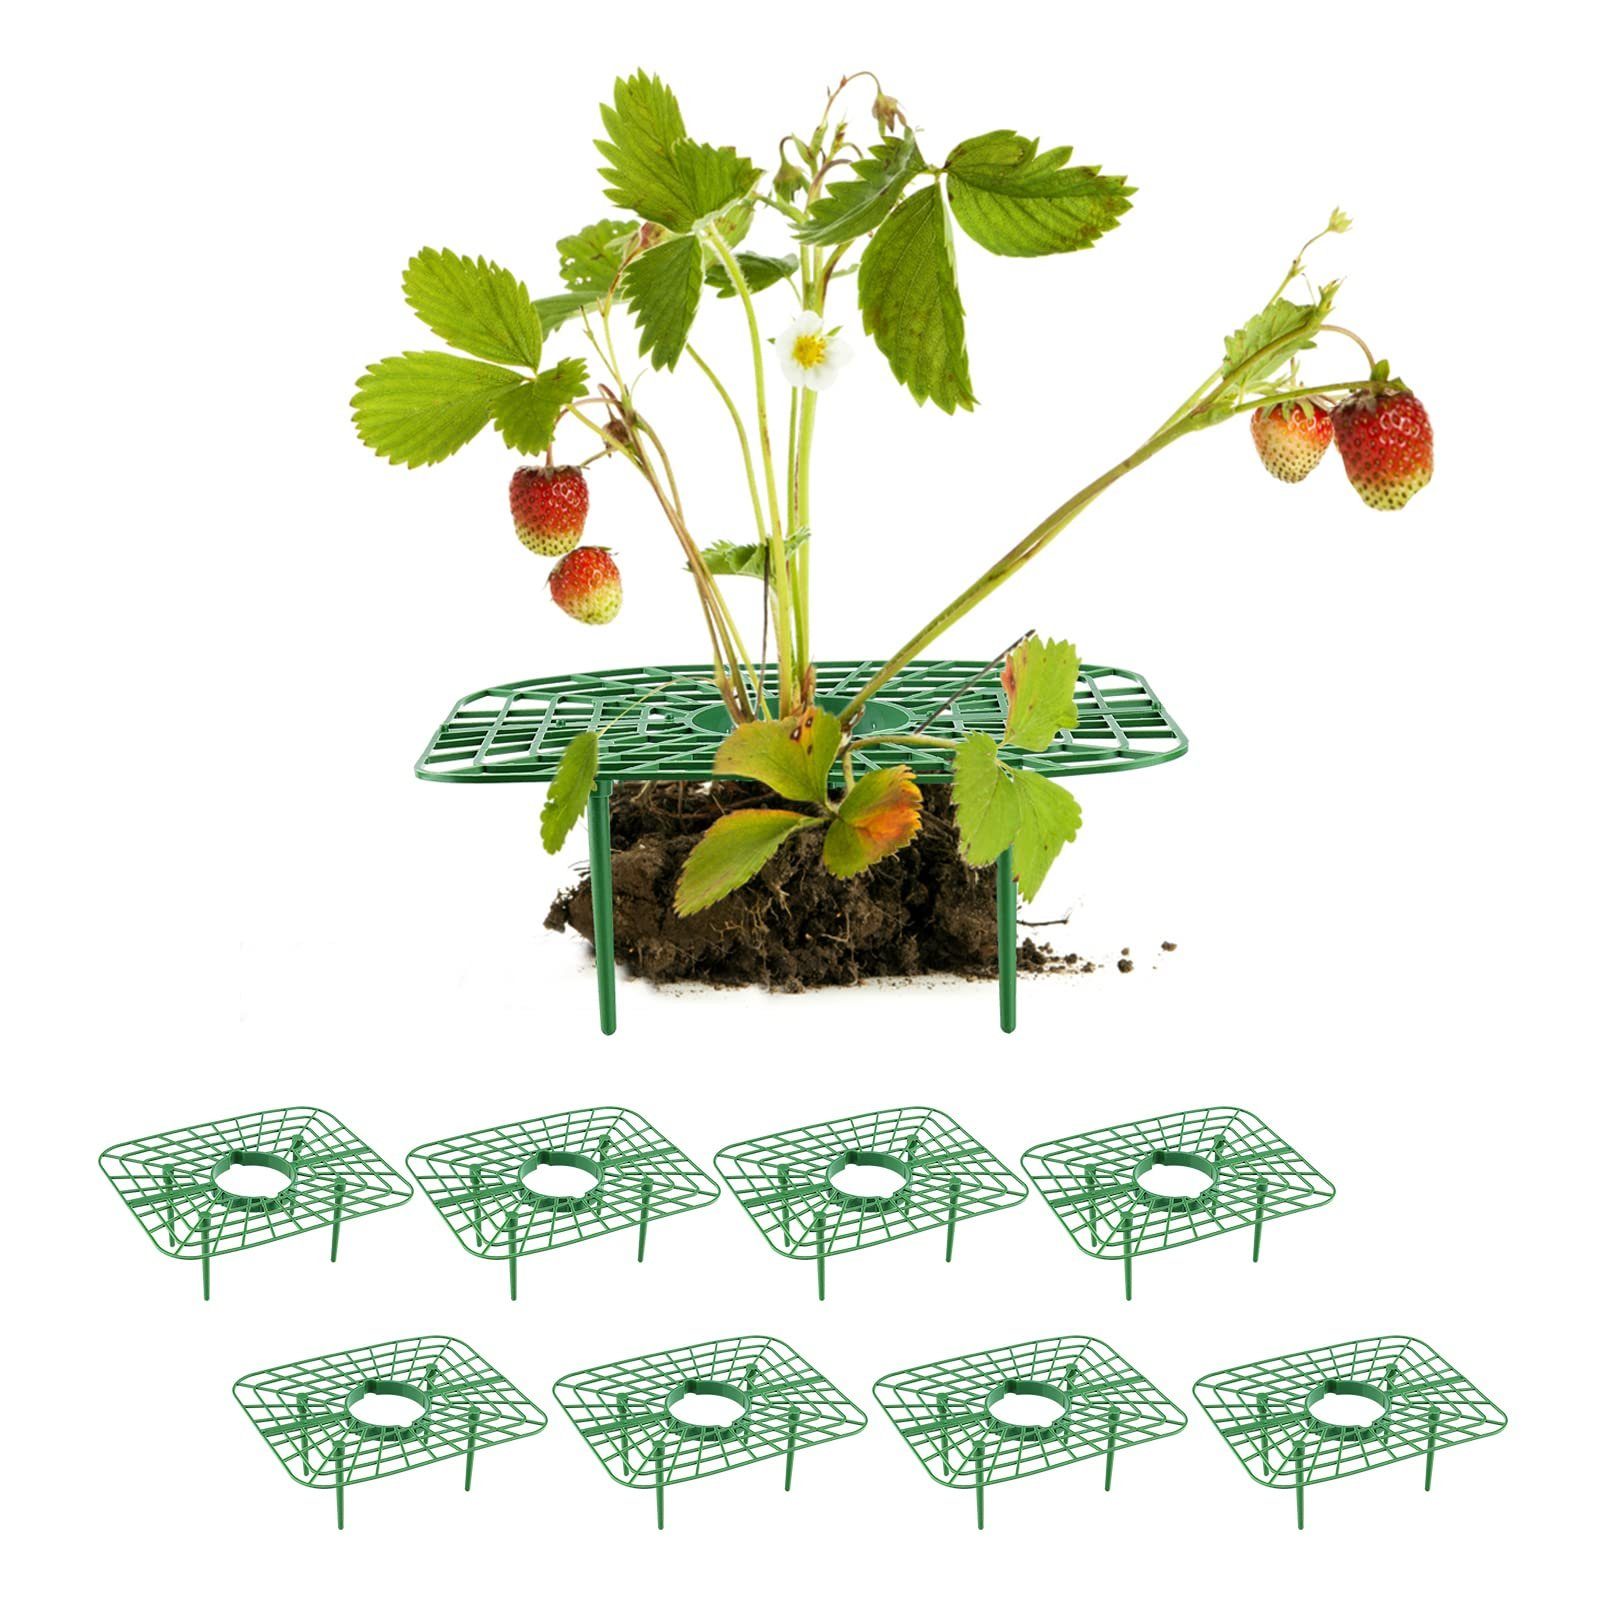 SEEZSSA Blumenständer 8x Erdbeerstützen für Erdbeeren mit 4 Beinen,Erdbeer-Pflanzenständer, Pflanzenregal,Balkon-Gemüseregal,Erhöhung von Obst/Gemüse,Kunststoff